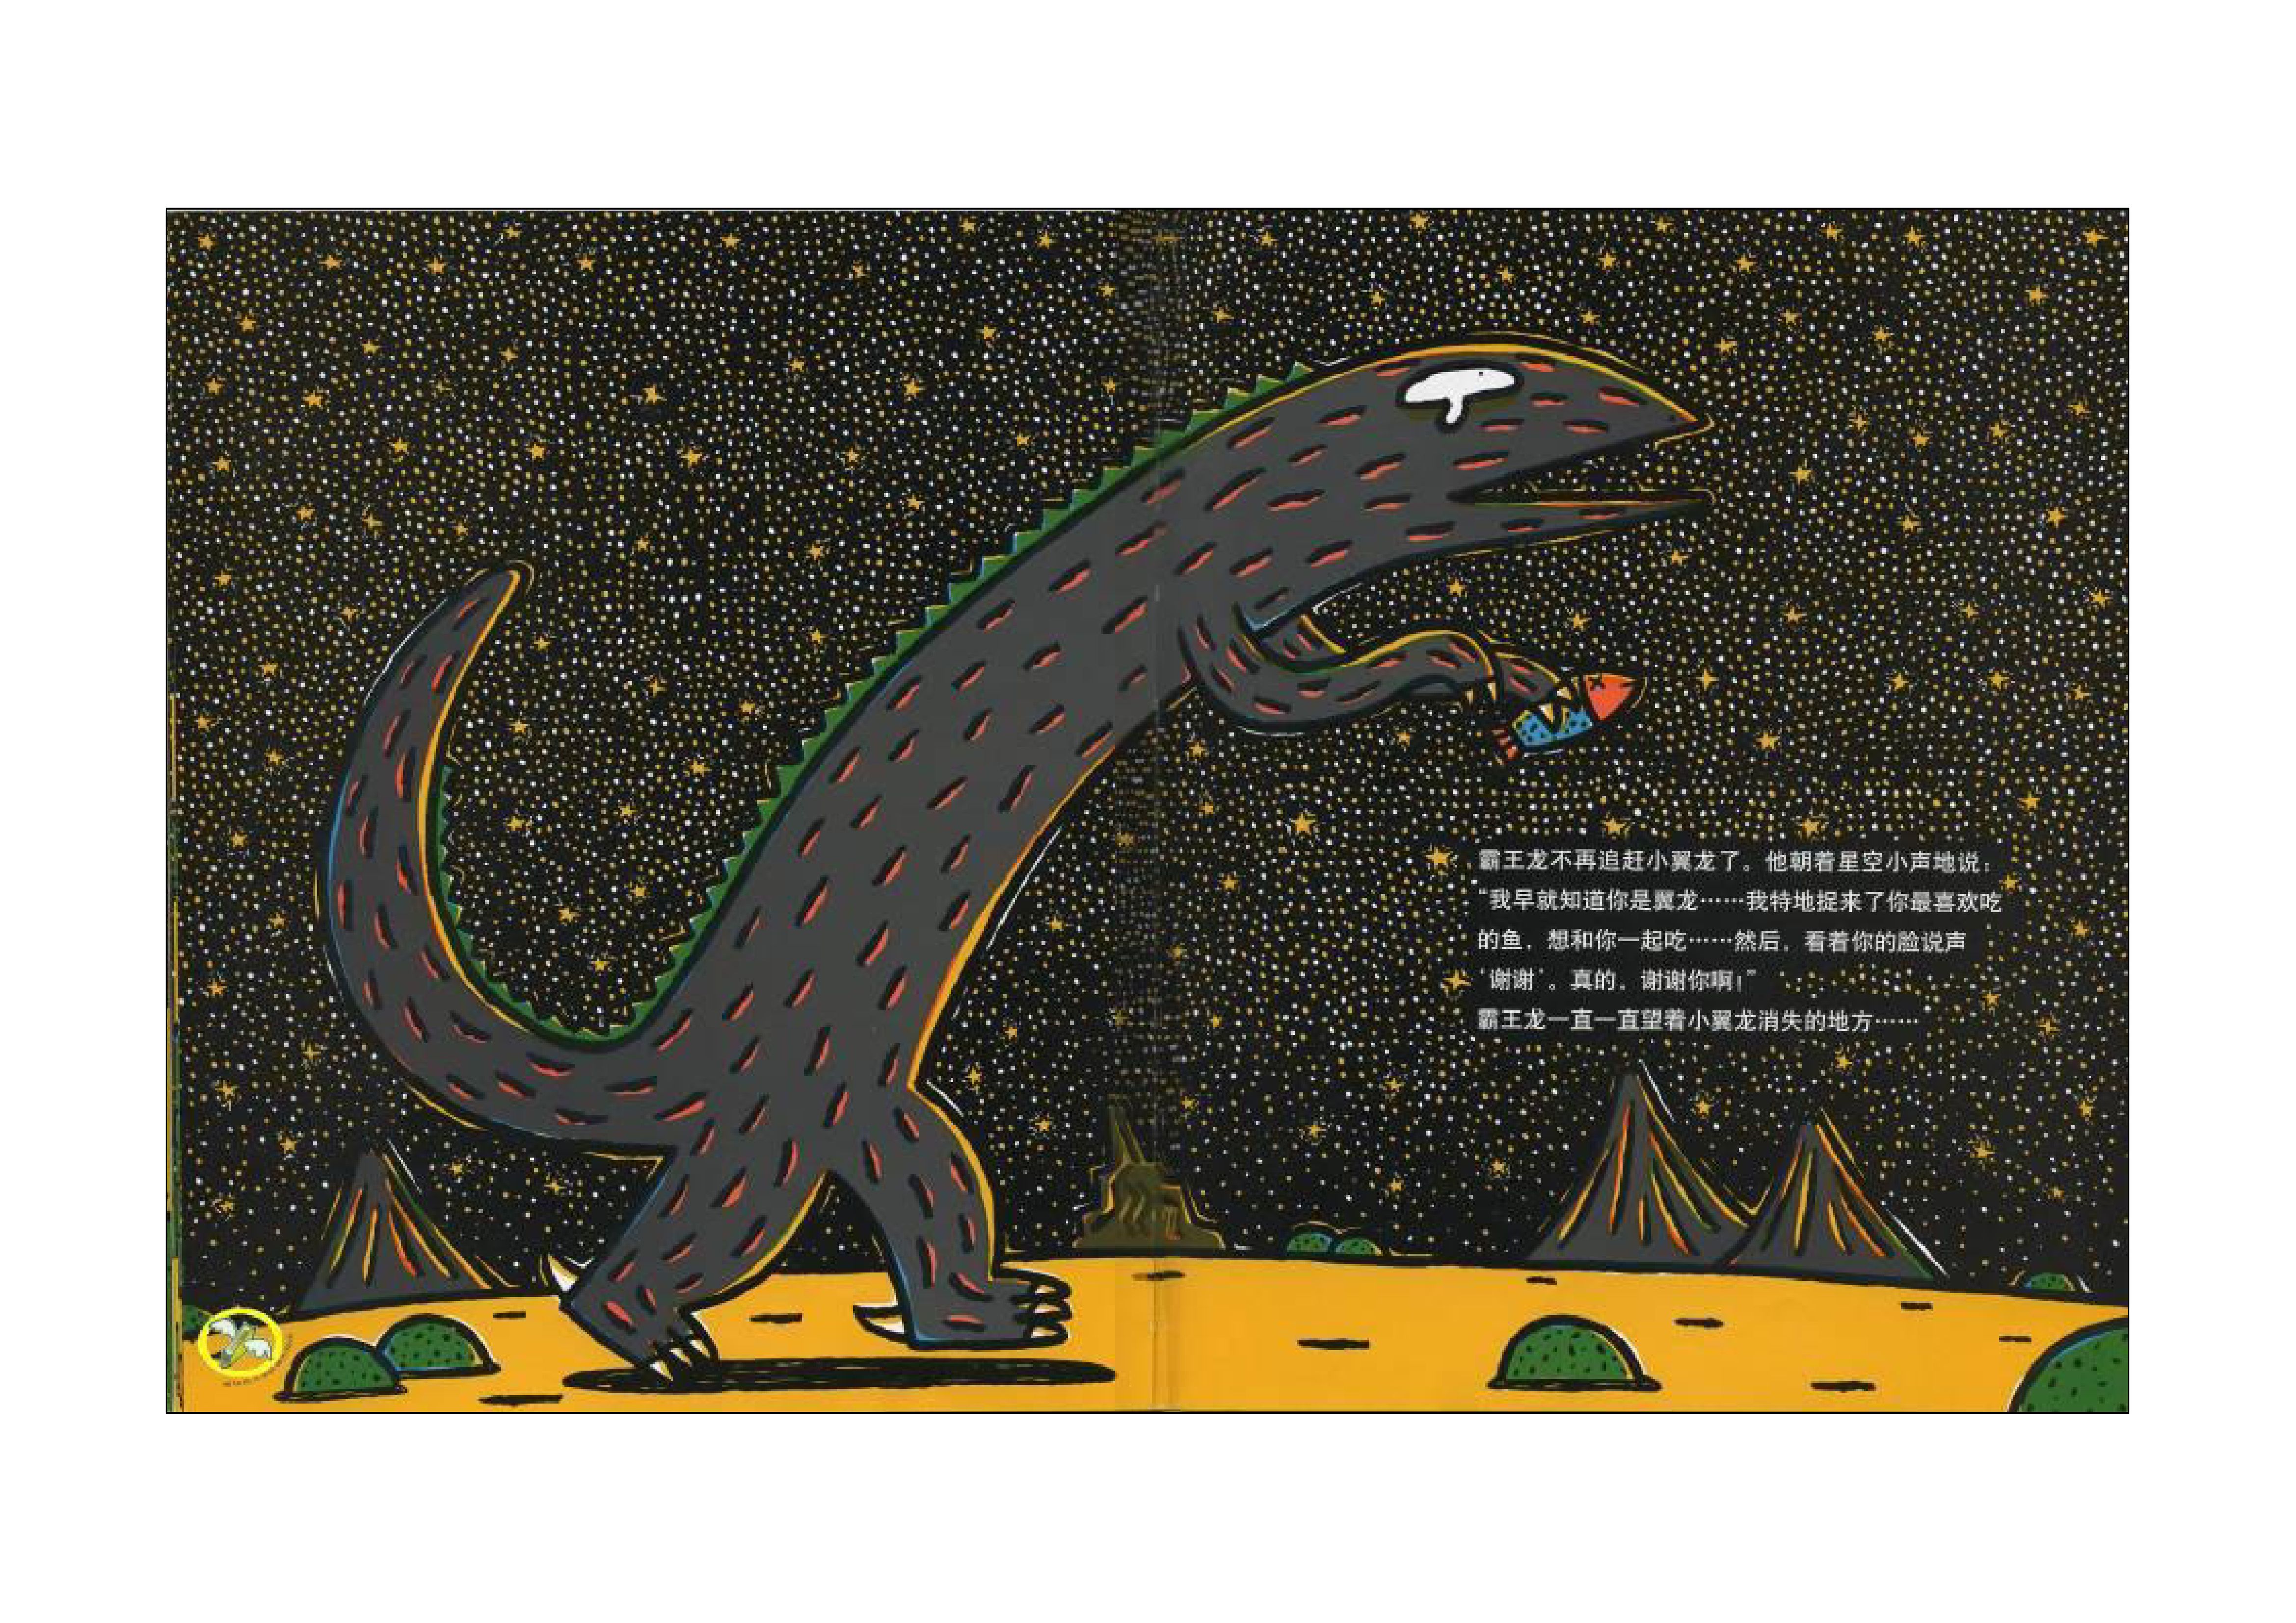 孩子们超爱的恐龙故事,关于善良,有声绘本故事《我是霸王龙》